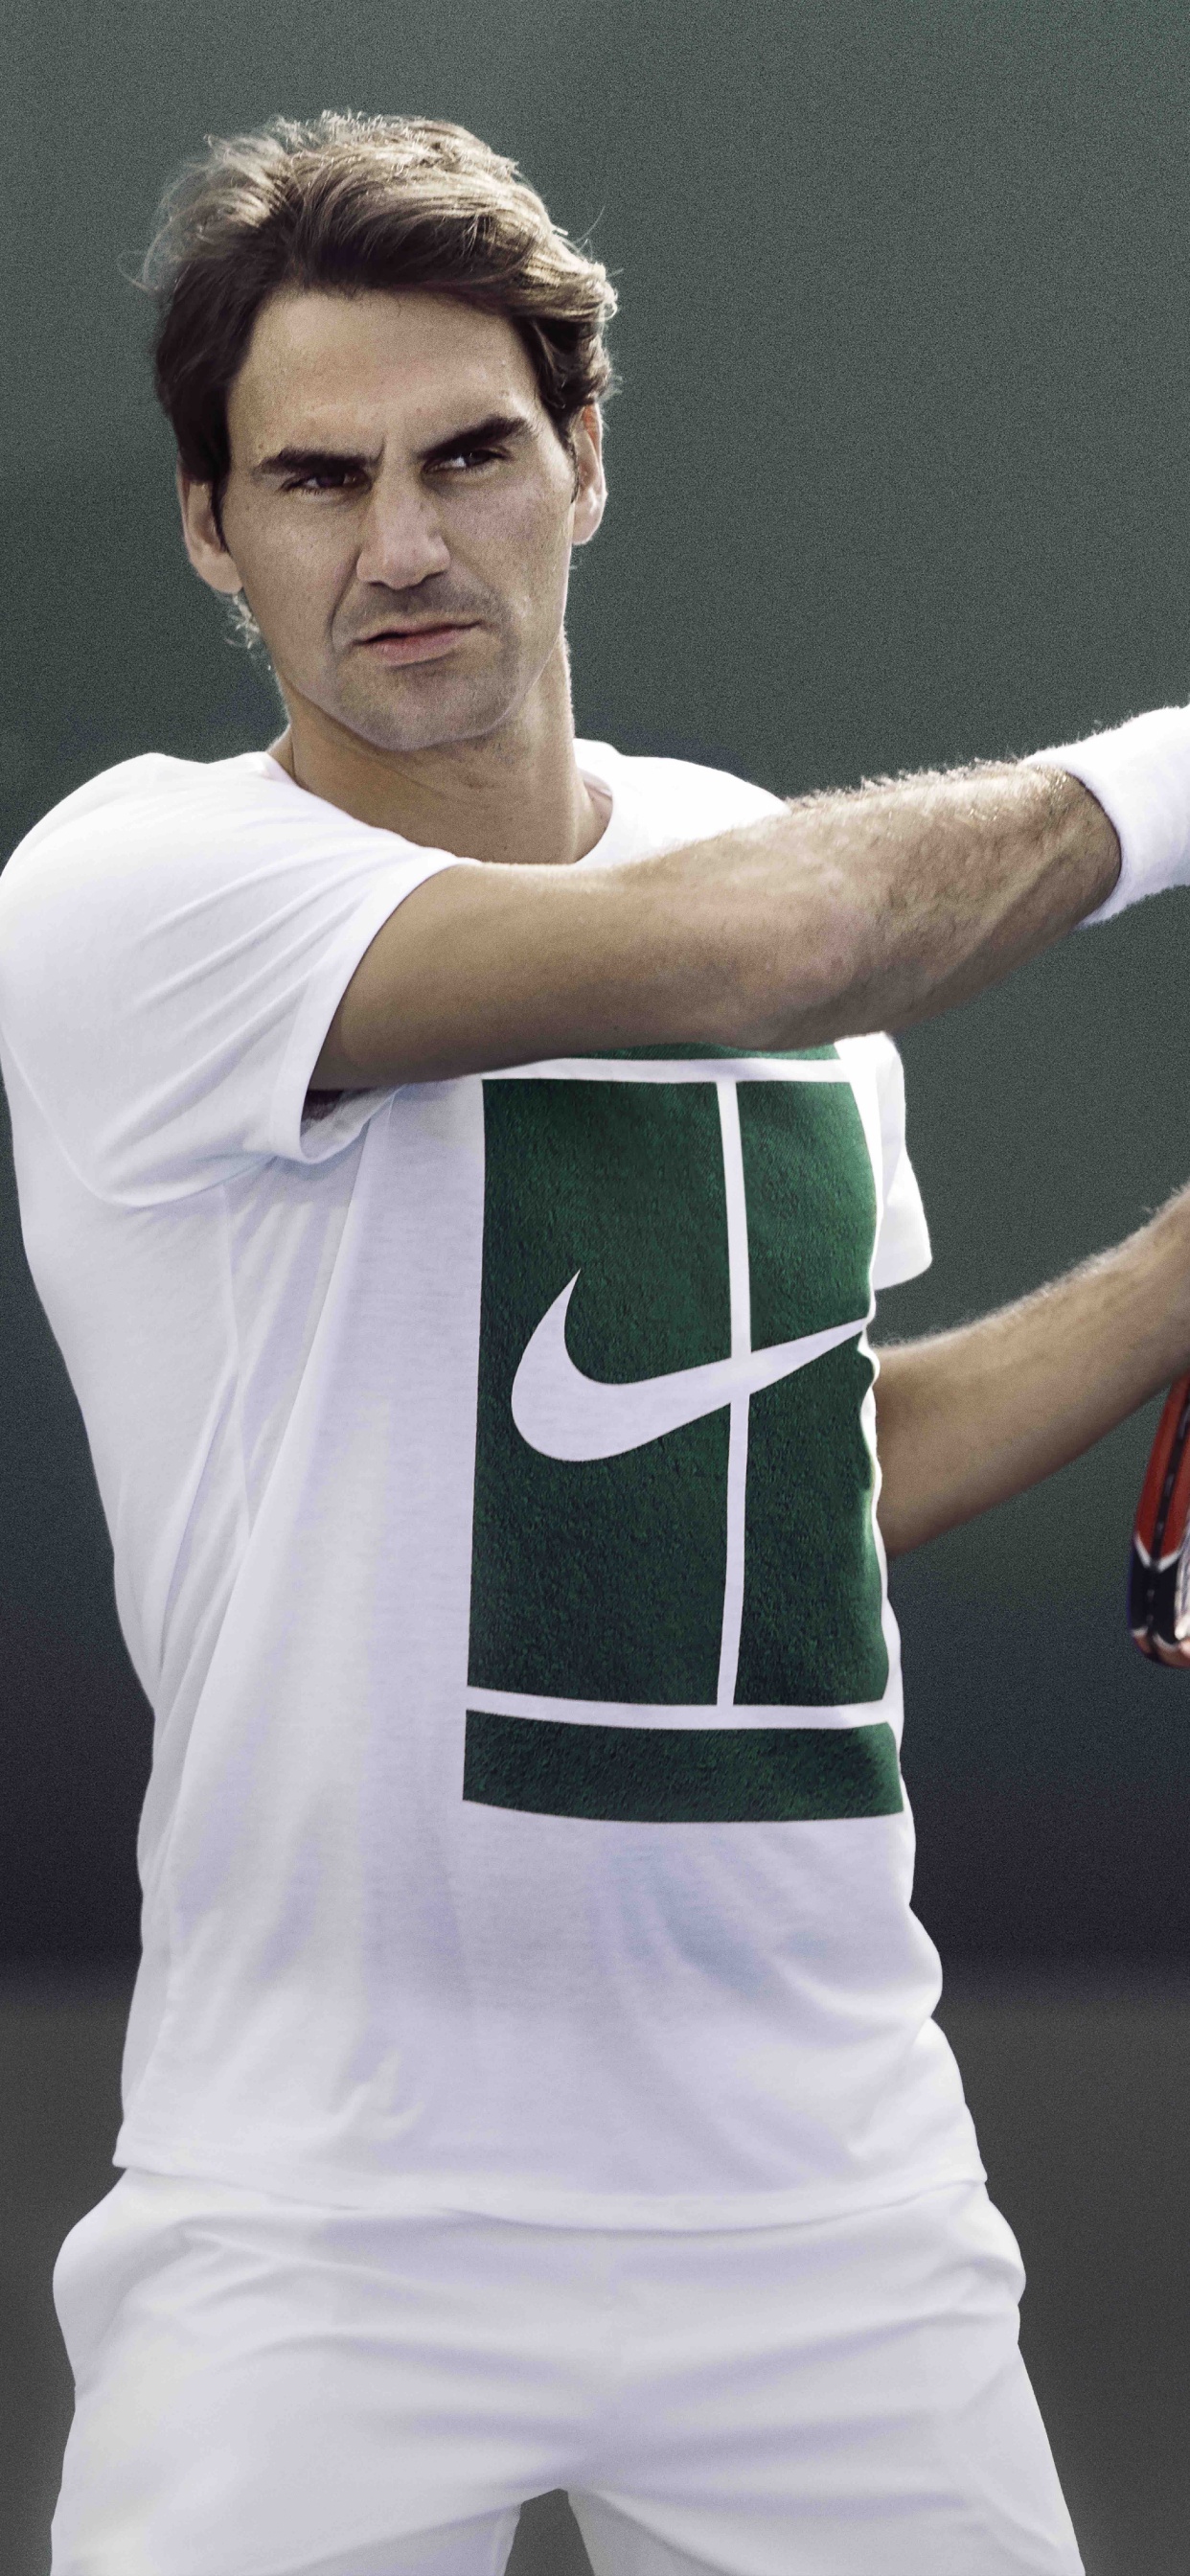 Homme en Chemise Jersey Nike Vert et Blanc Tenant Une Raquette de Tennis Rouge et Blanc. Wallpaper in 1242x2688 Resolution